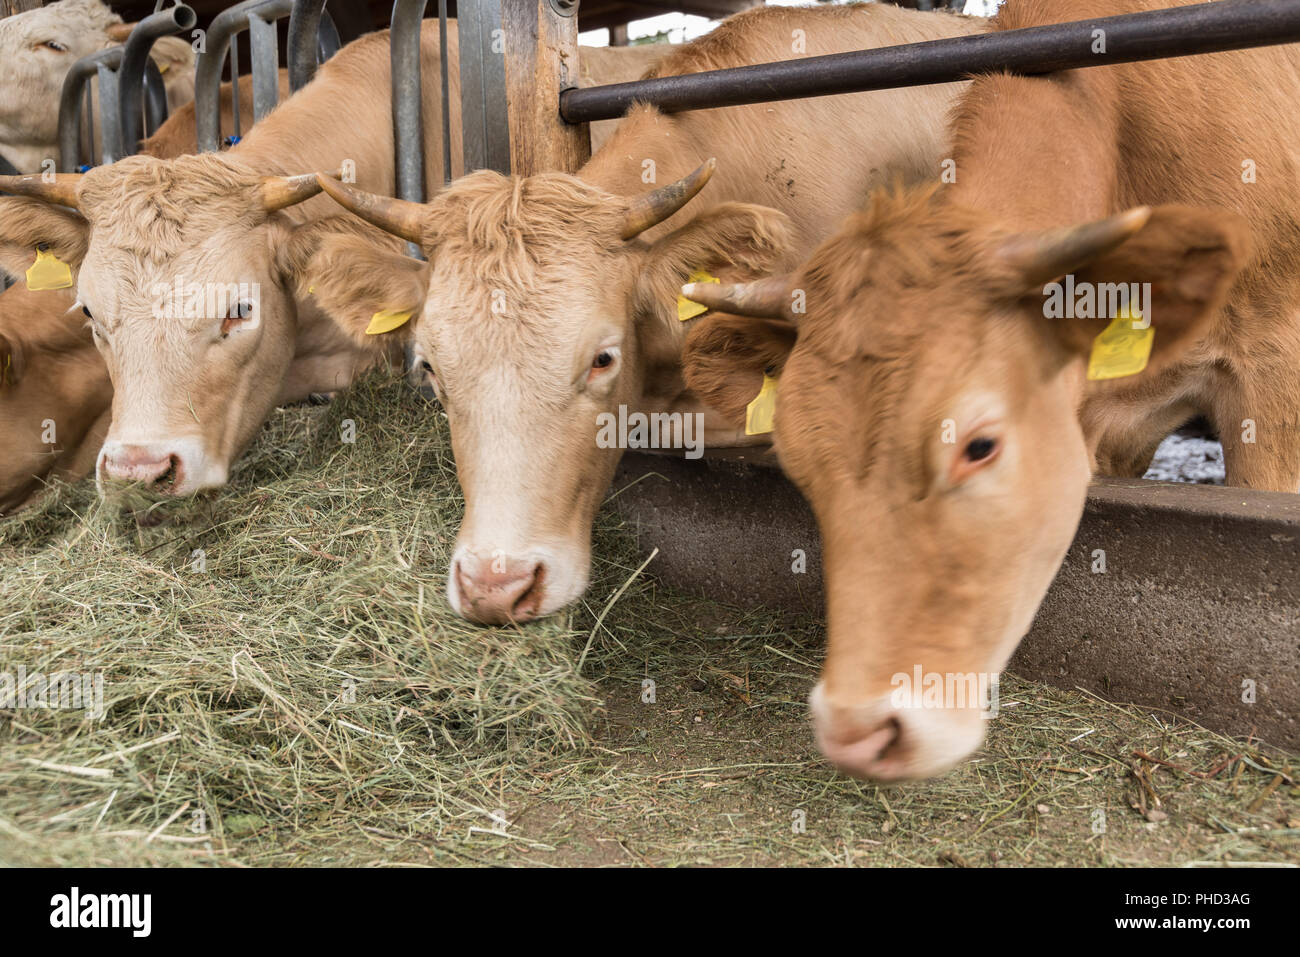 Heu fressen Kühe im Stall - close-up Vieh halten. Stockfoto